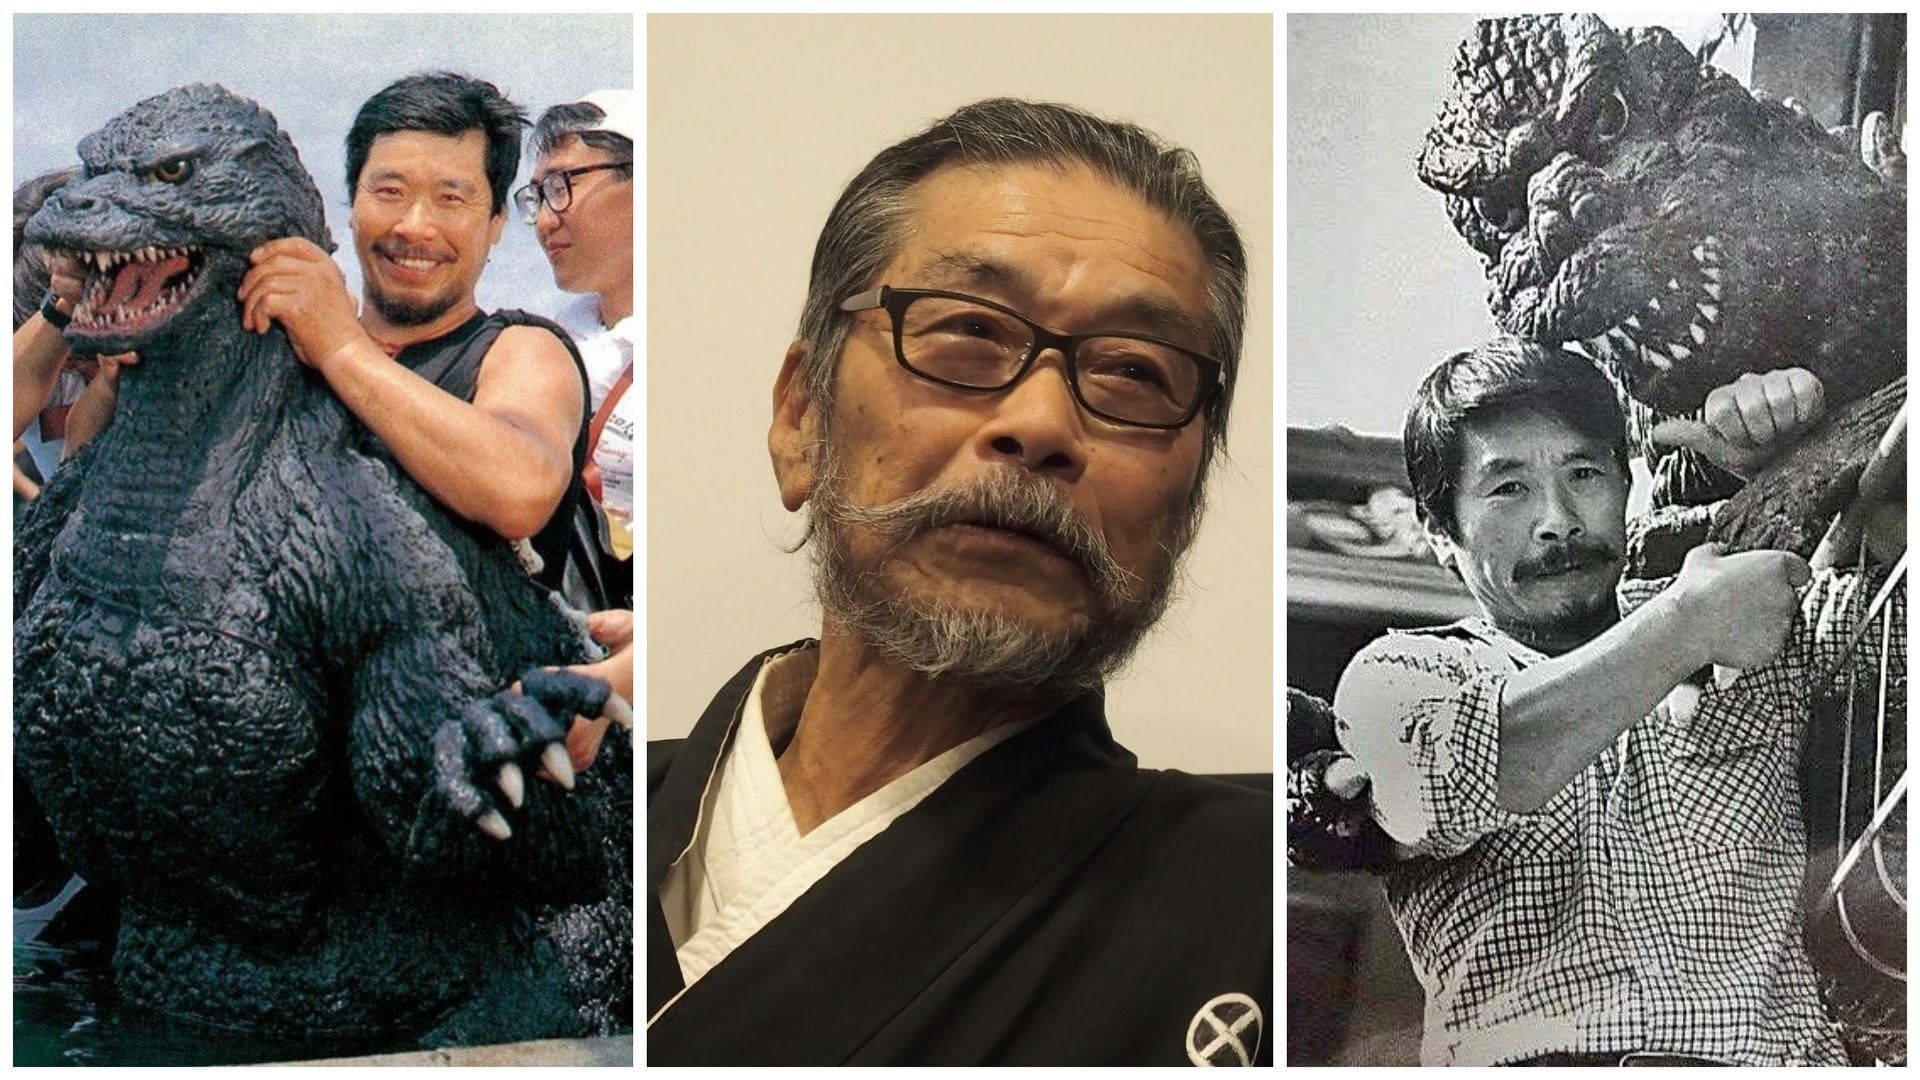 Godzilla suit actor, Kenpachiro Satsuma passed away on December 16 (Image via X/@Godzilla_shots, @GodzillaKaiju23)